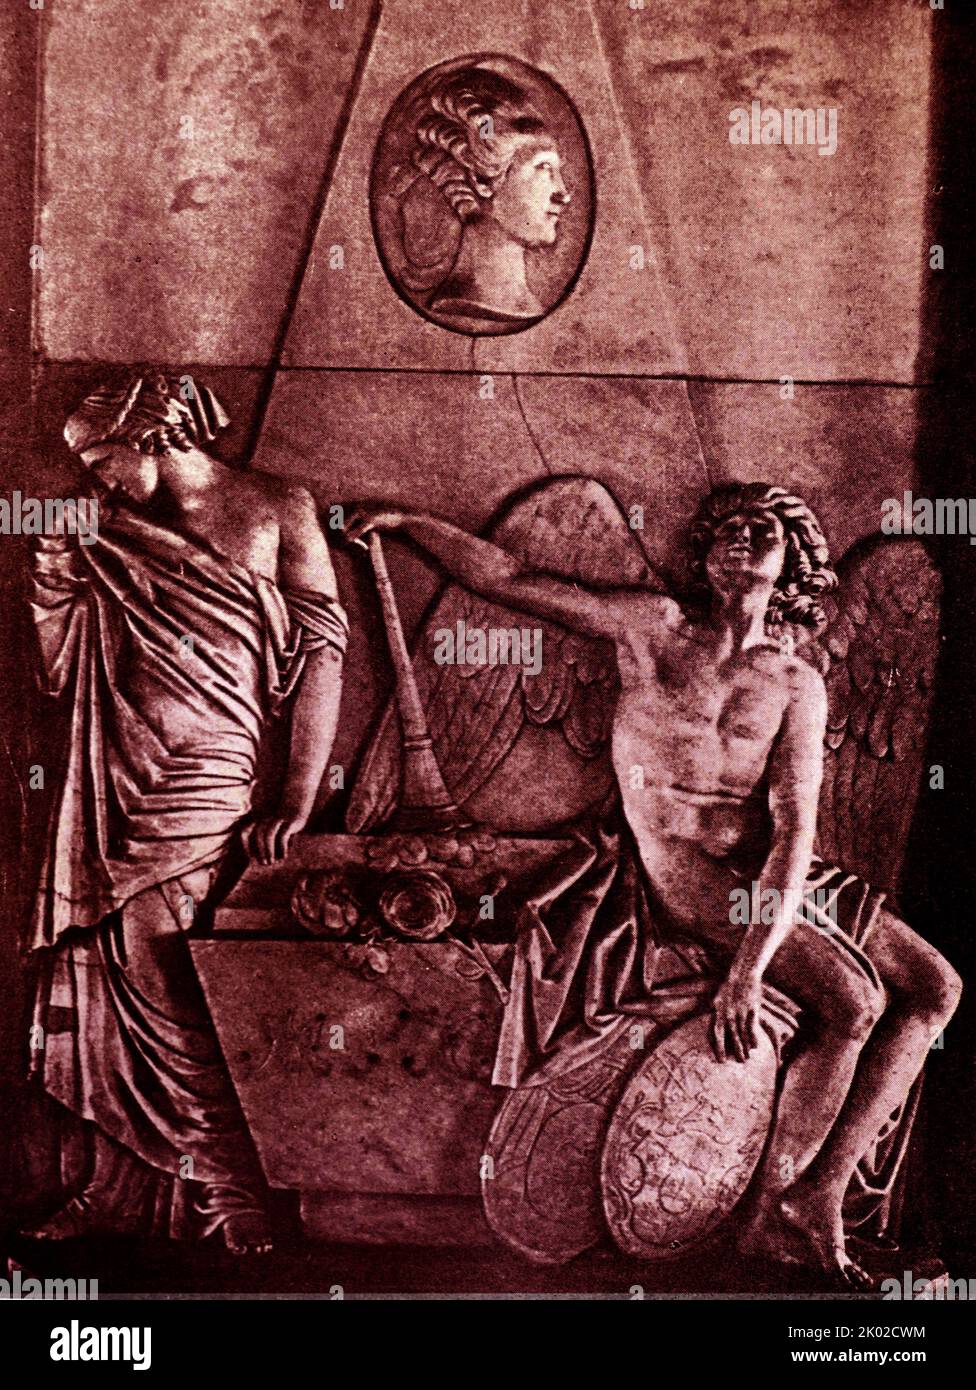 Denkmal für M.I.Sobakina. 1782. Marmor. Ein Kopf des Verstorbenen wird in das Oval gelegt. Martos hat bewiesen, dass er die griechische Skulptur gut studiert hat und seine subtile Berührung hebt selbst die kleinsten Elemente der Komposition hervor. Martos I.P. 1752-1835. Moskau. Stockfoto